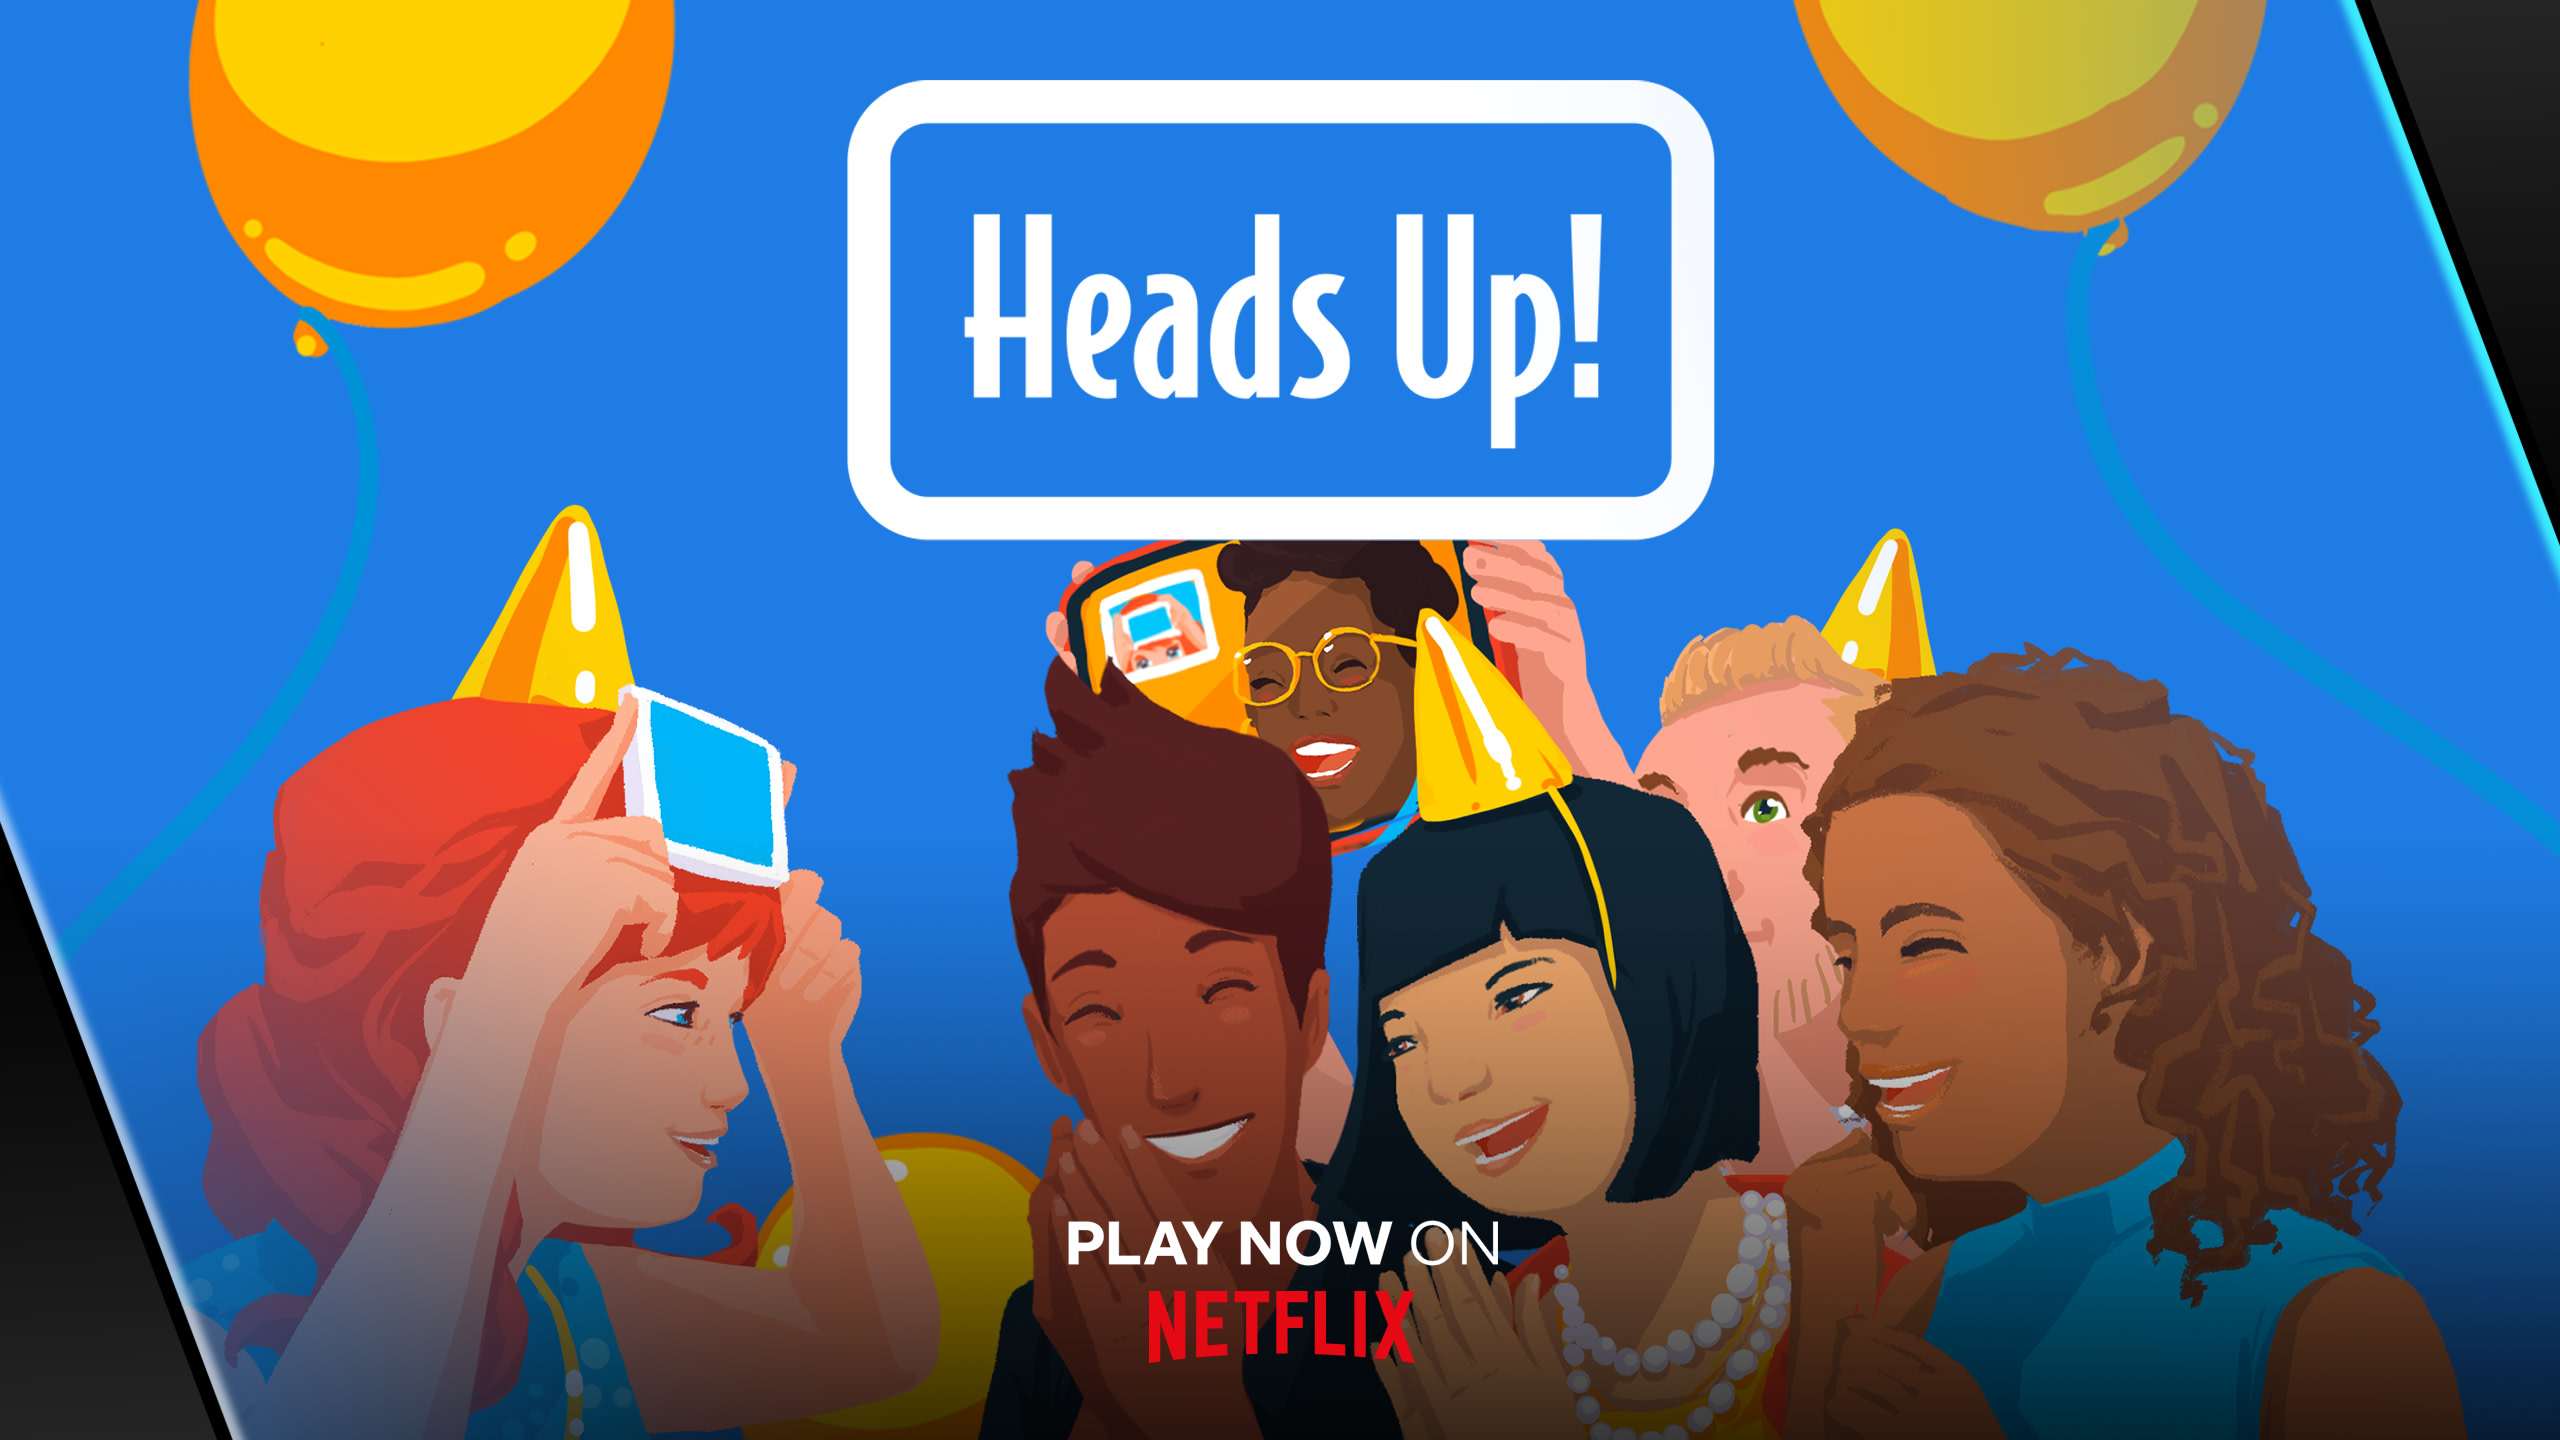 O novo jogo para celular “Heads Up!”  A Netflix testará sua paixão!